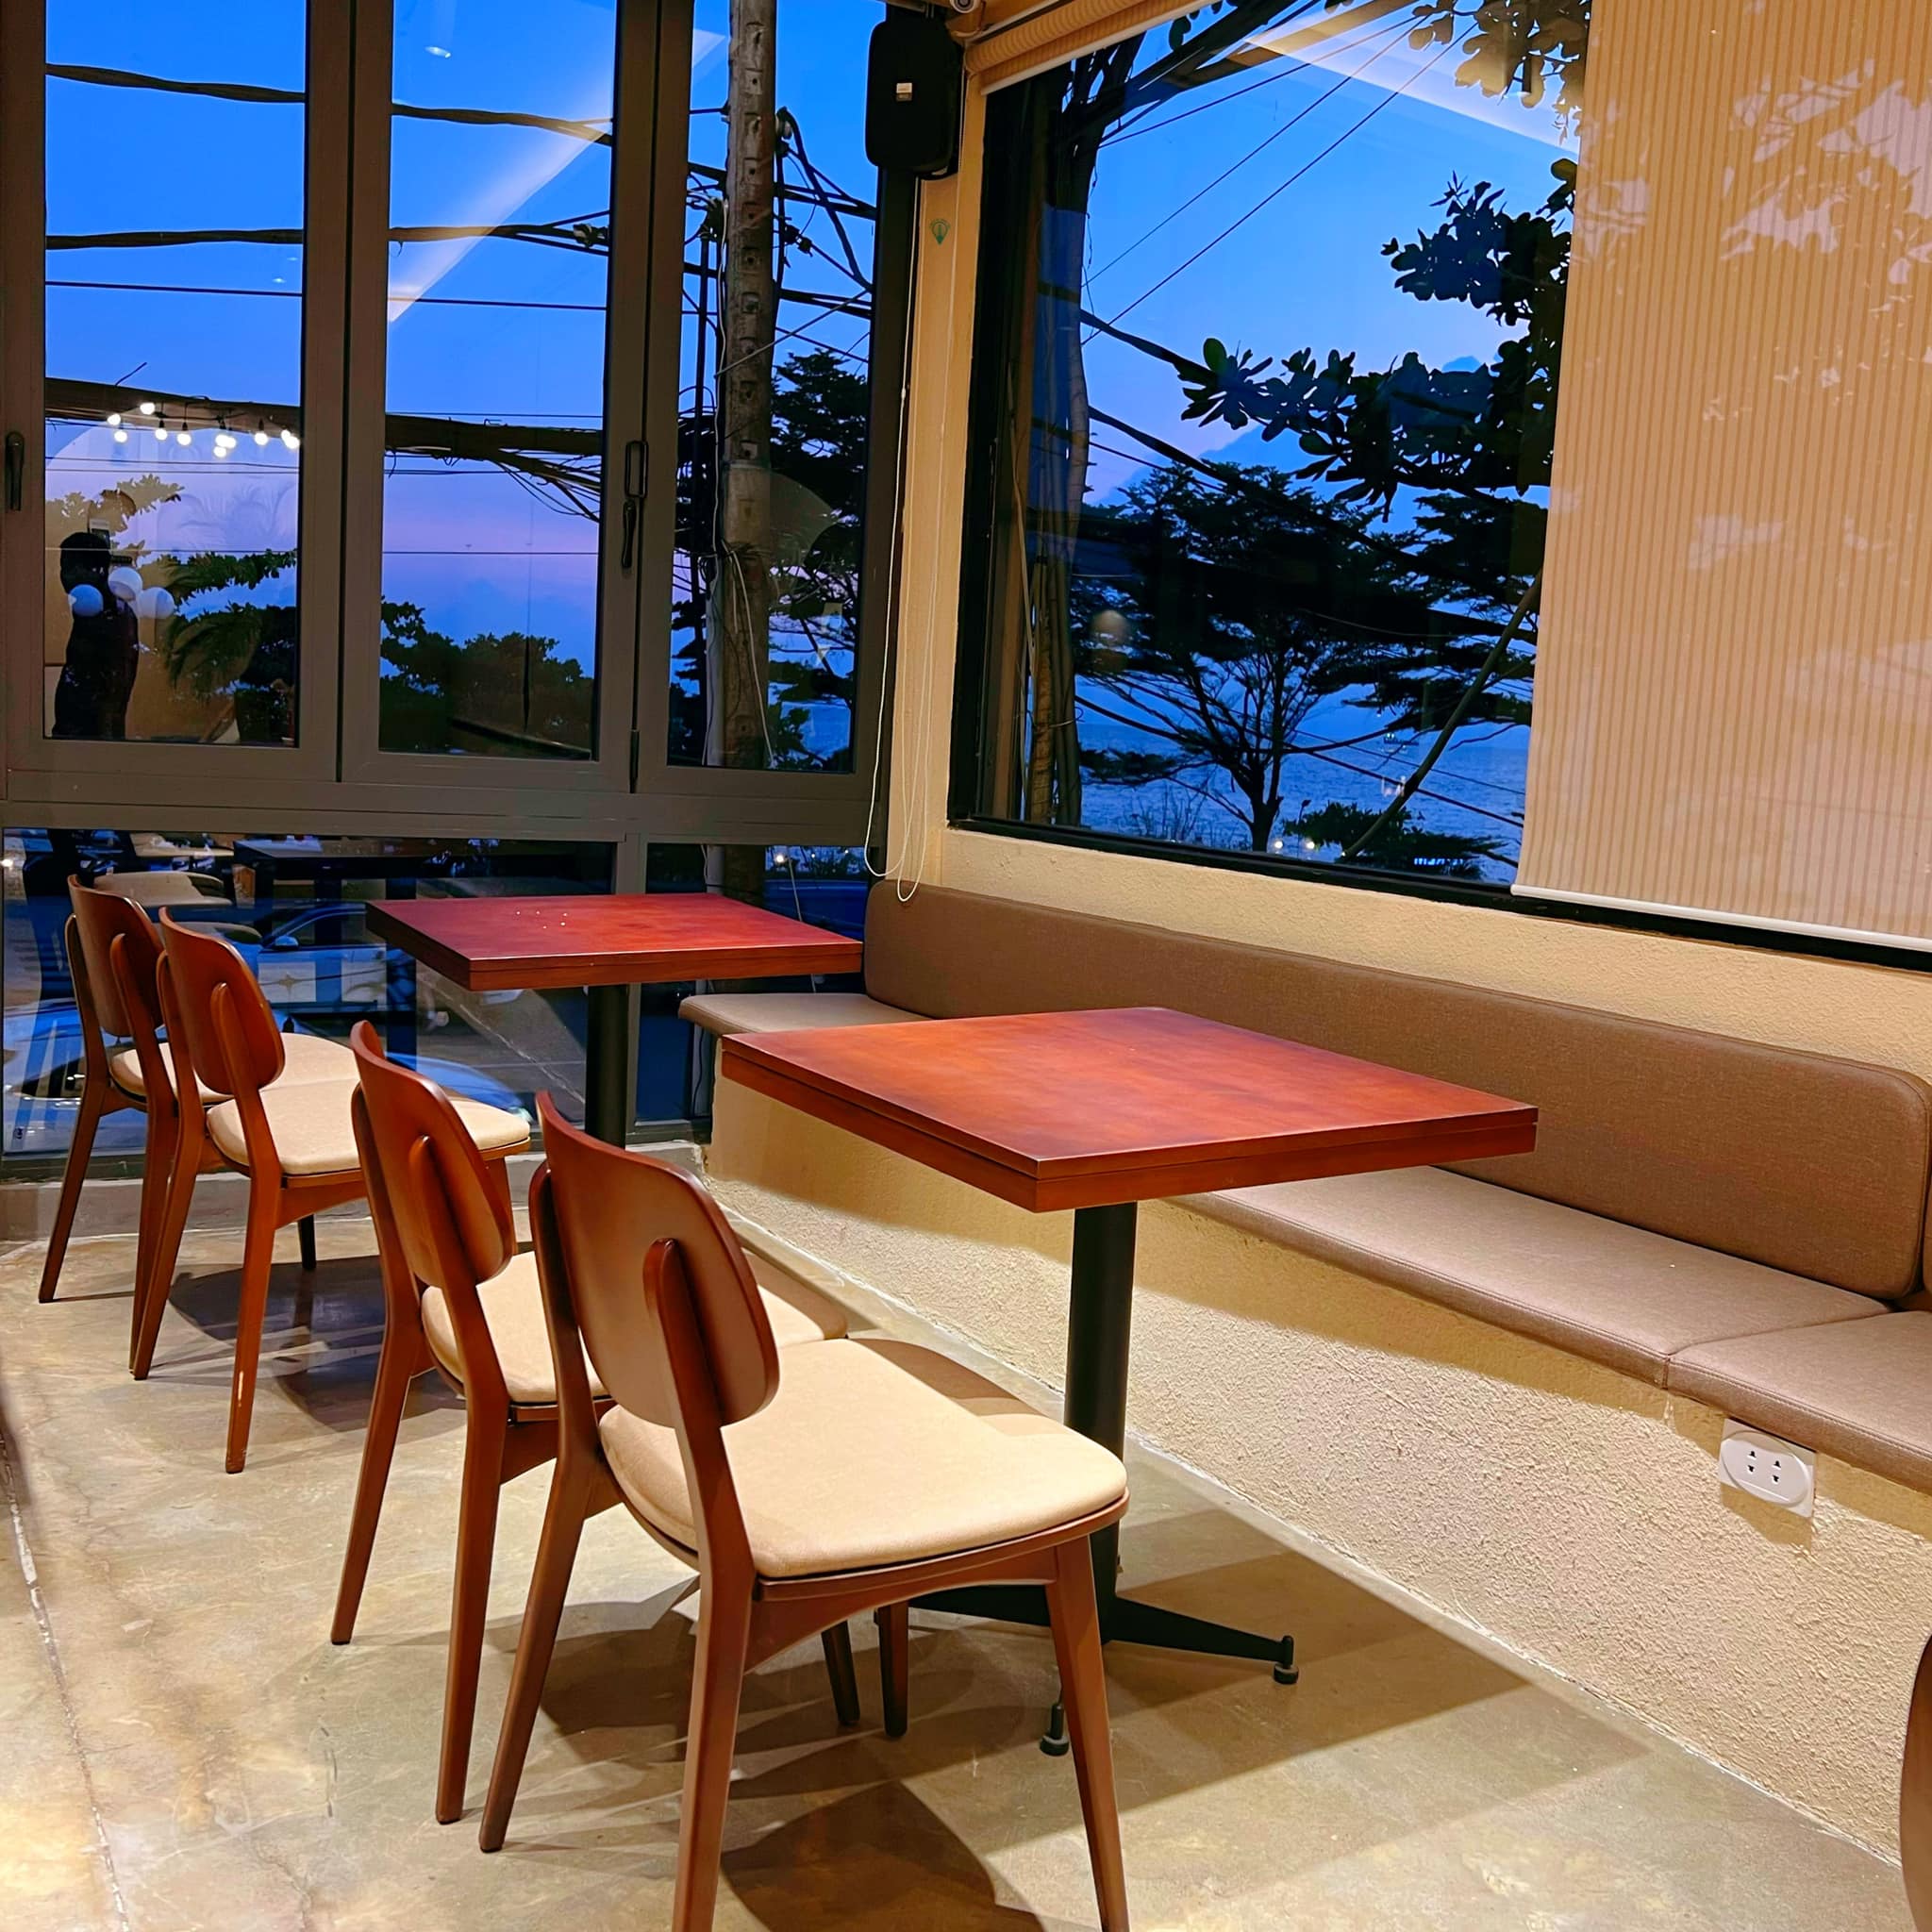 quán cà phê view biển Vũng Tàu